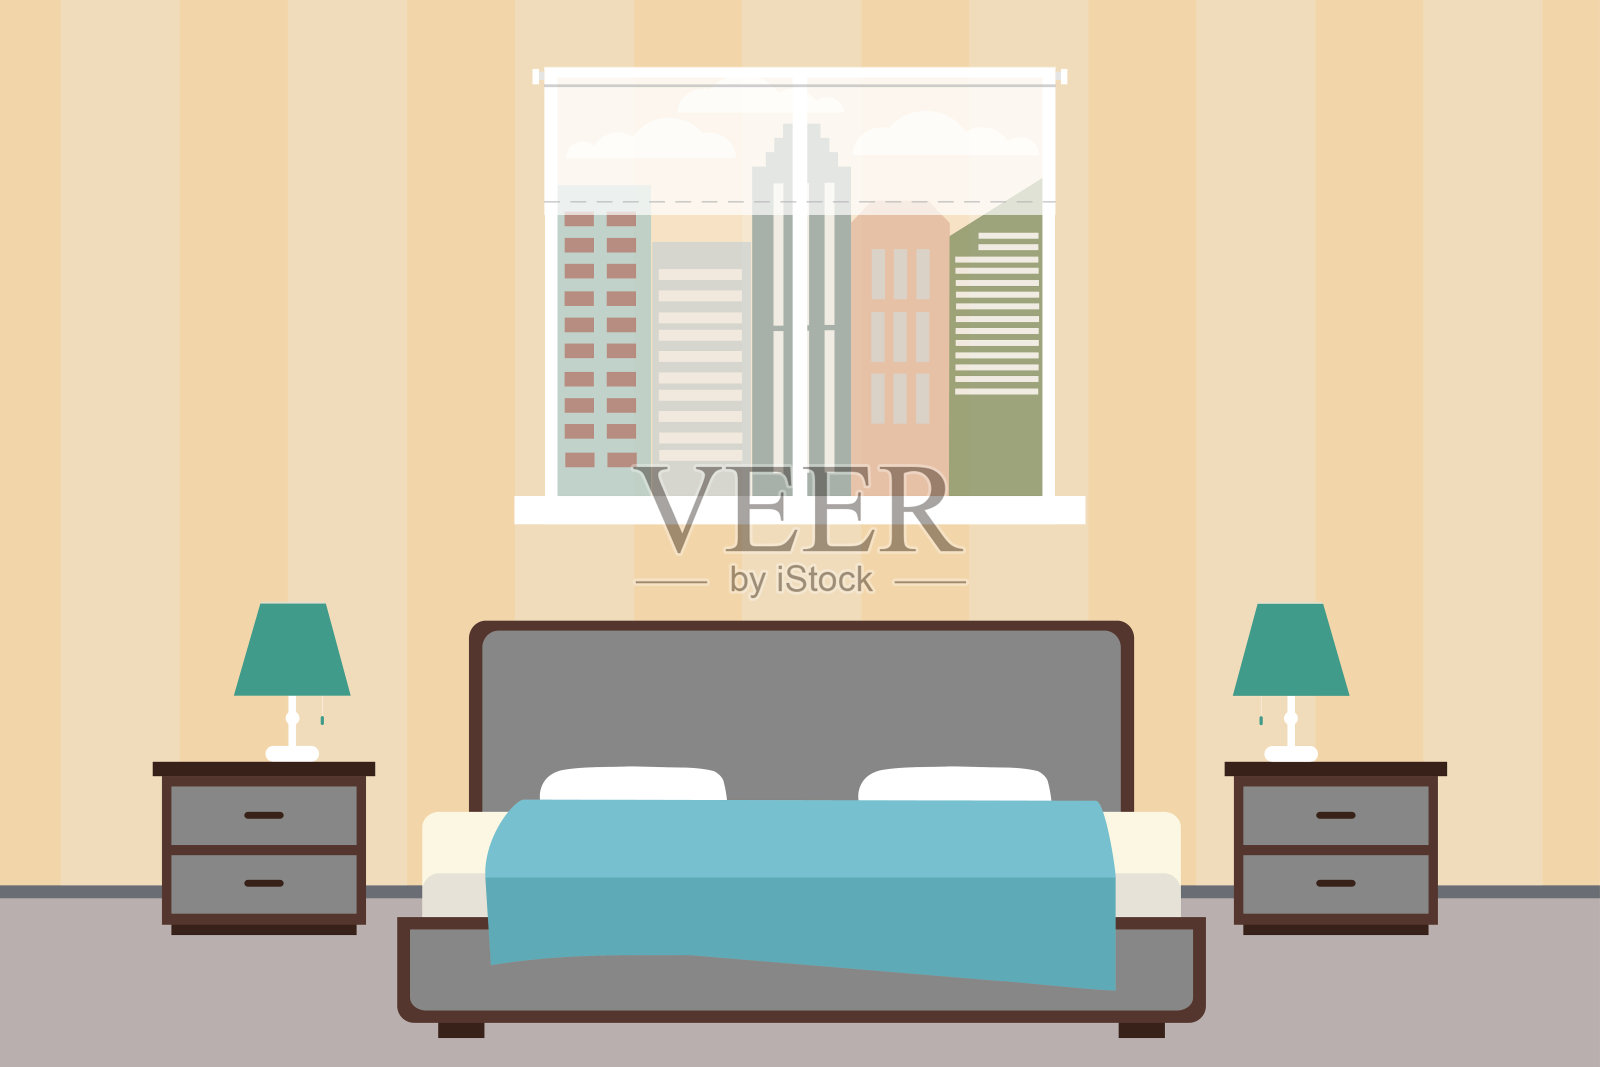 酒店房间或卧室室内平面设计。家具插画图片素材